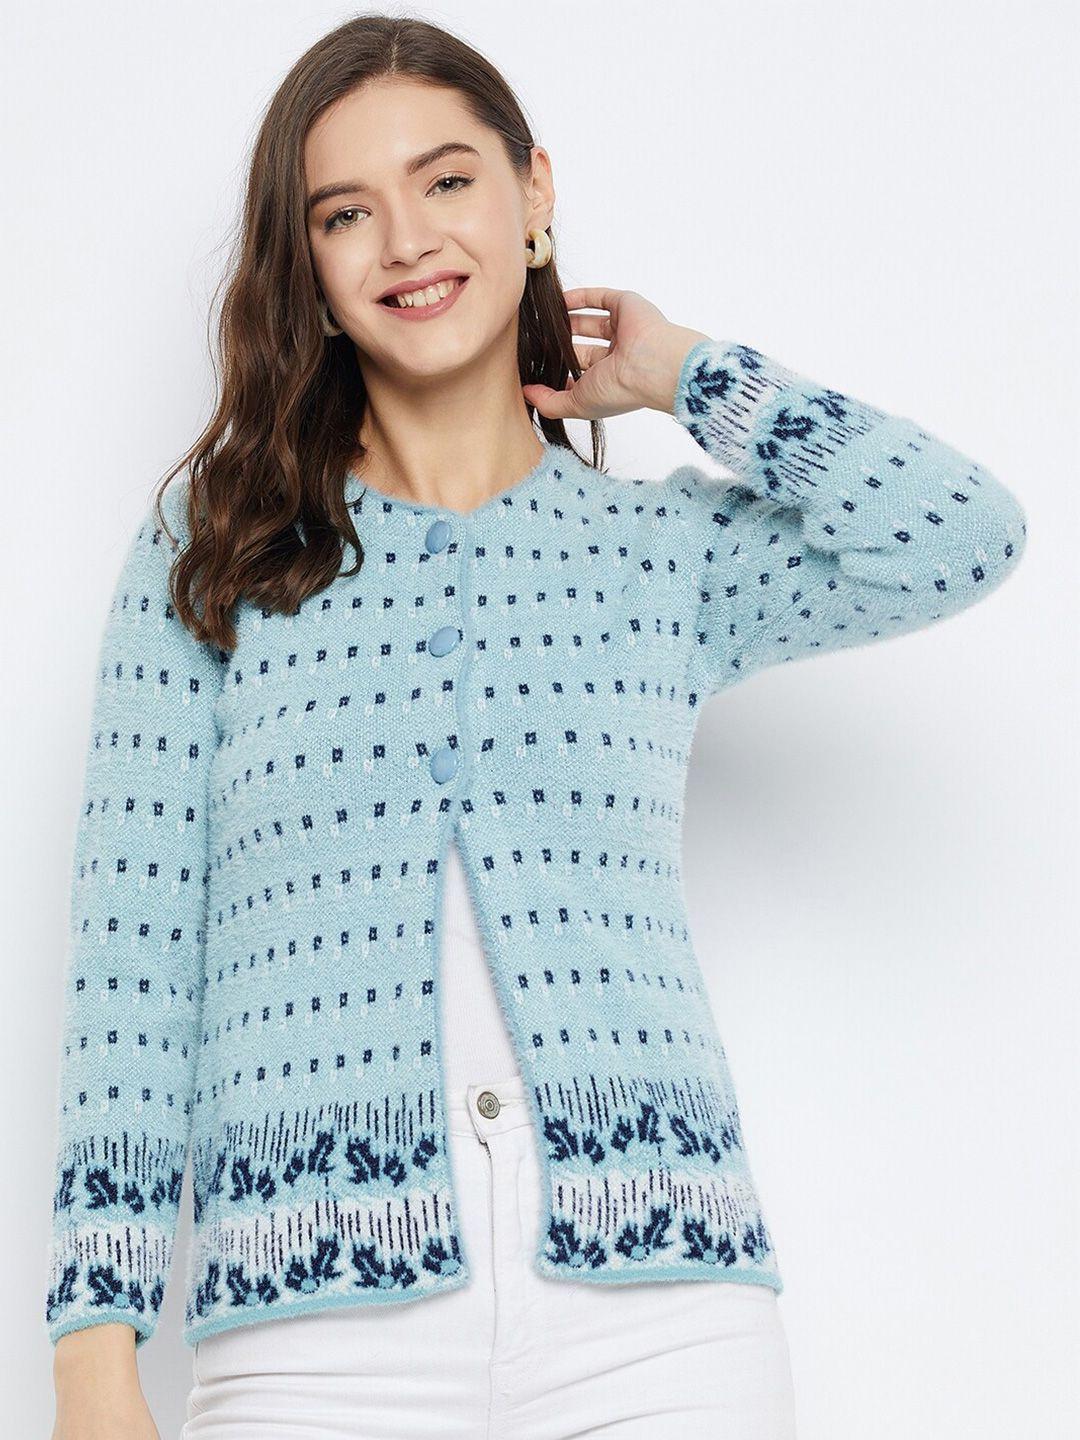 zigo-quirky-self-design-woollen-cardigan-sweater